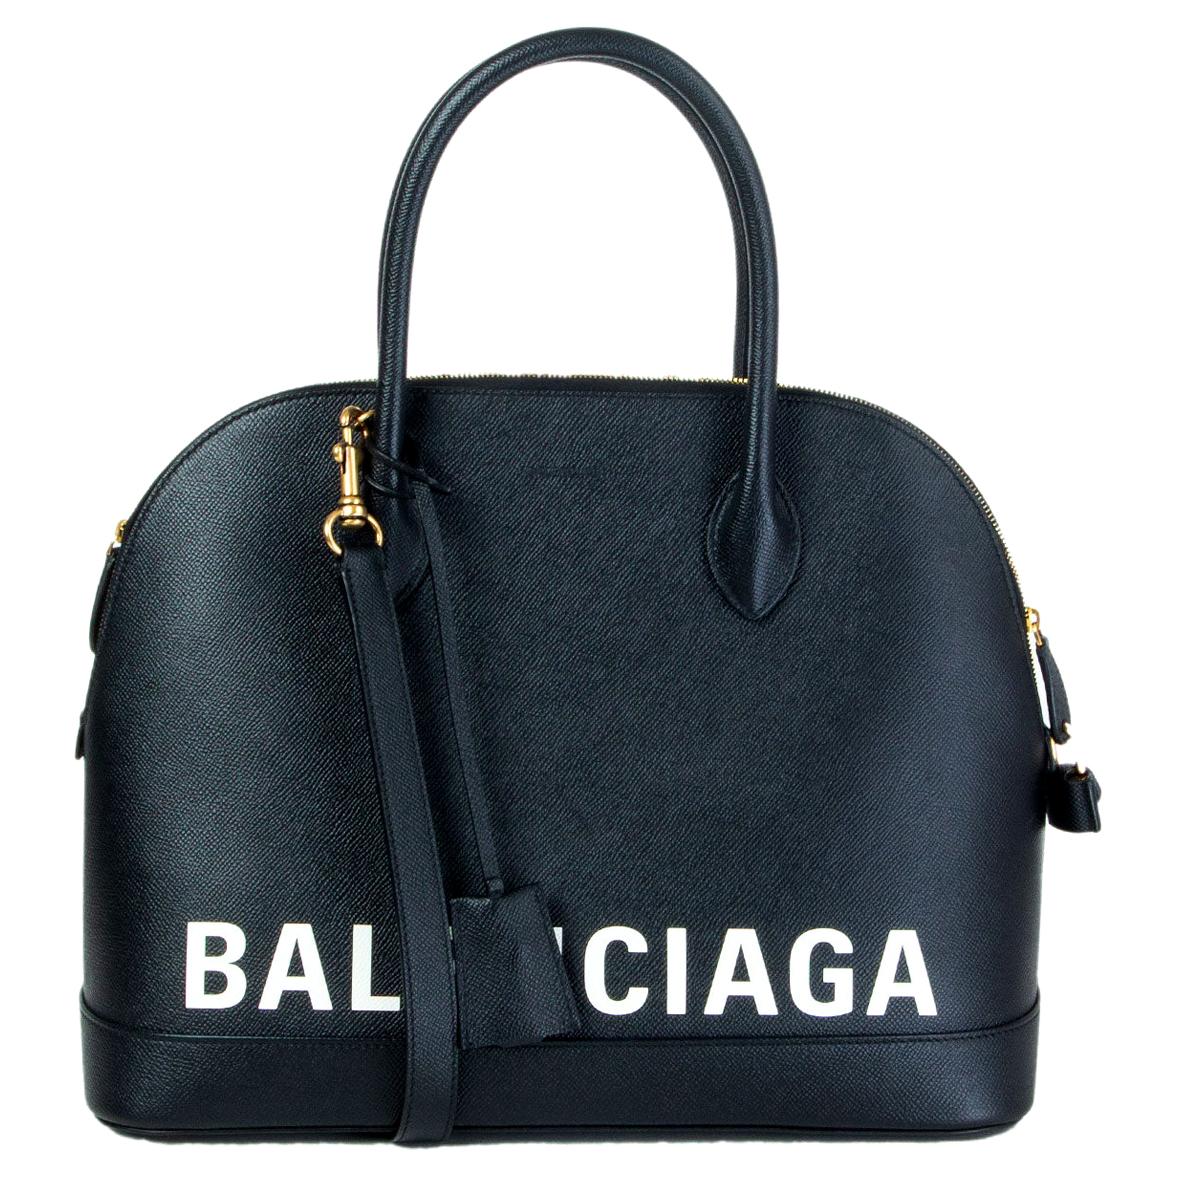 BALENCIAGA black leather white LOGO VILLE MEDIUM TOP HANDLE Bag